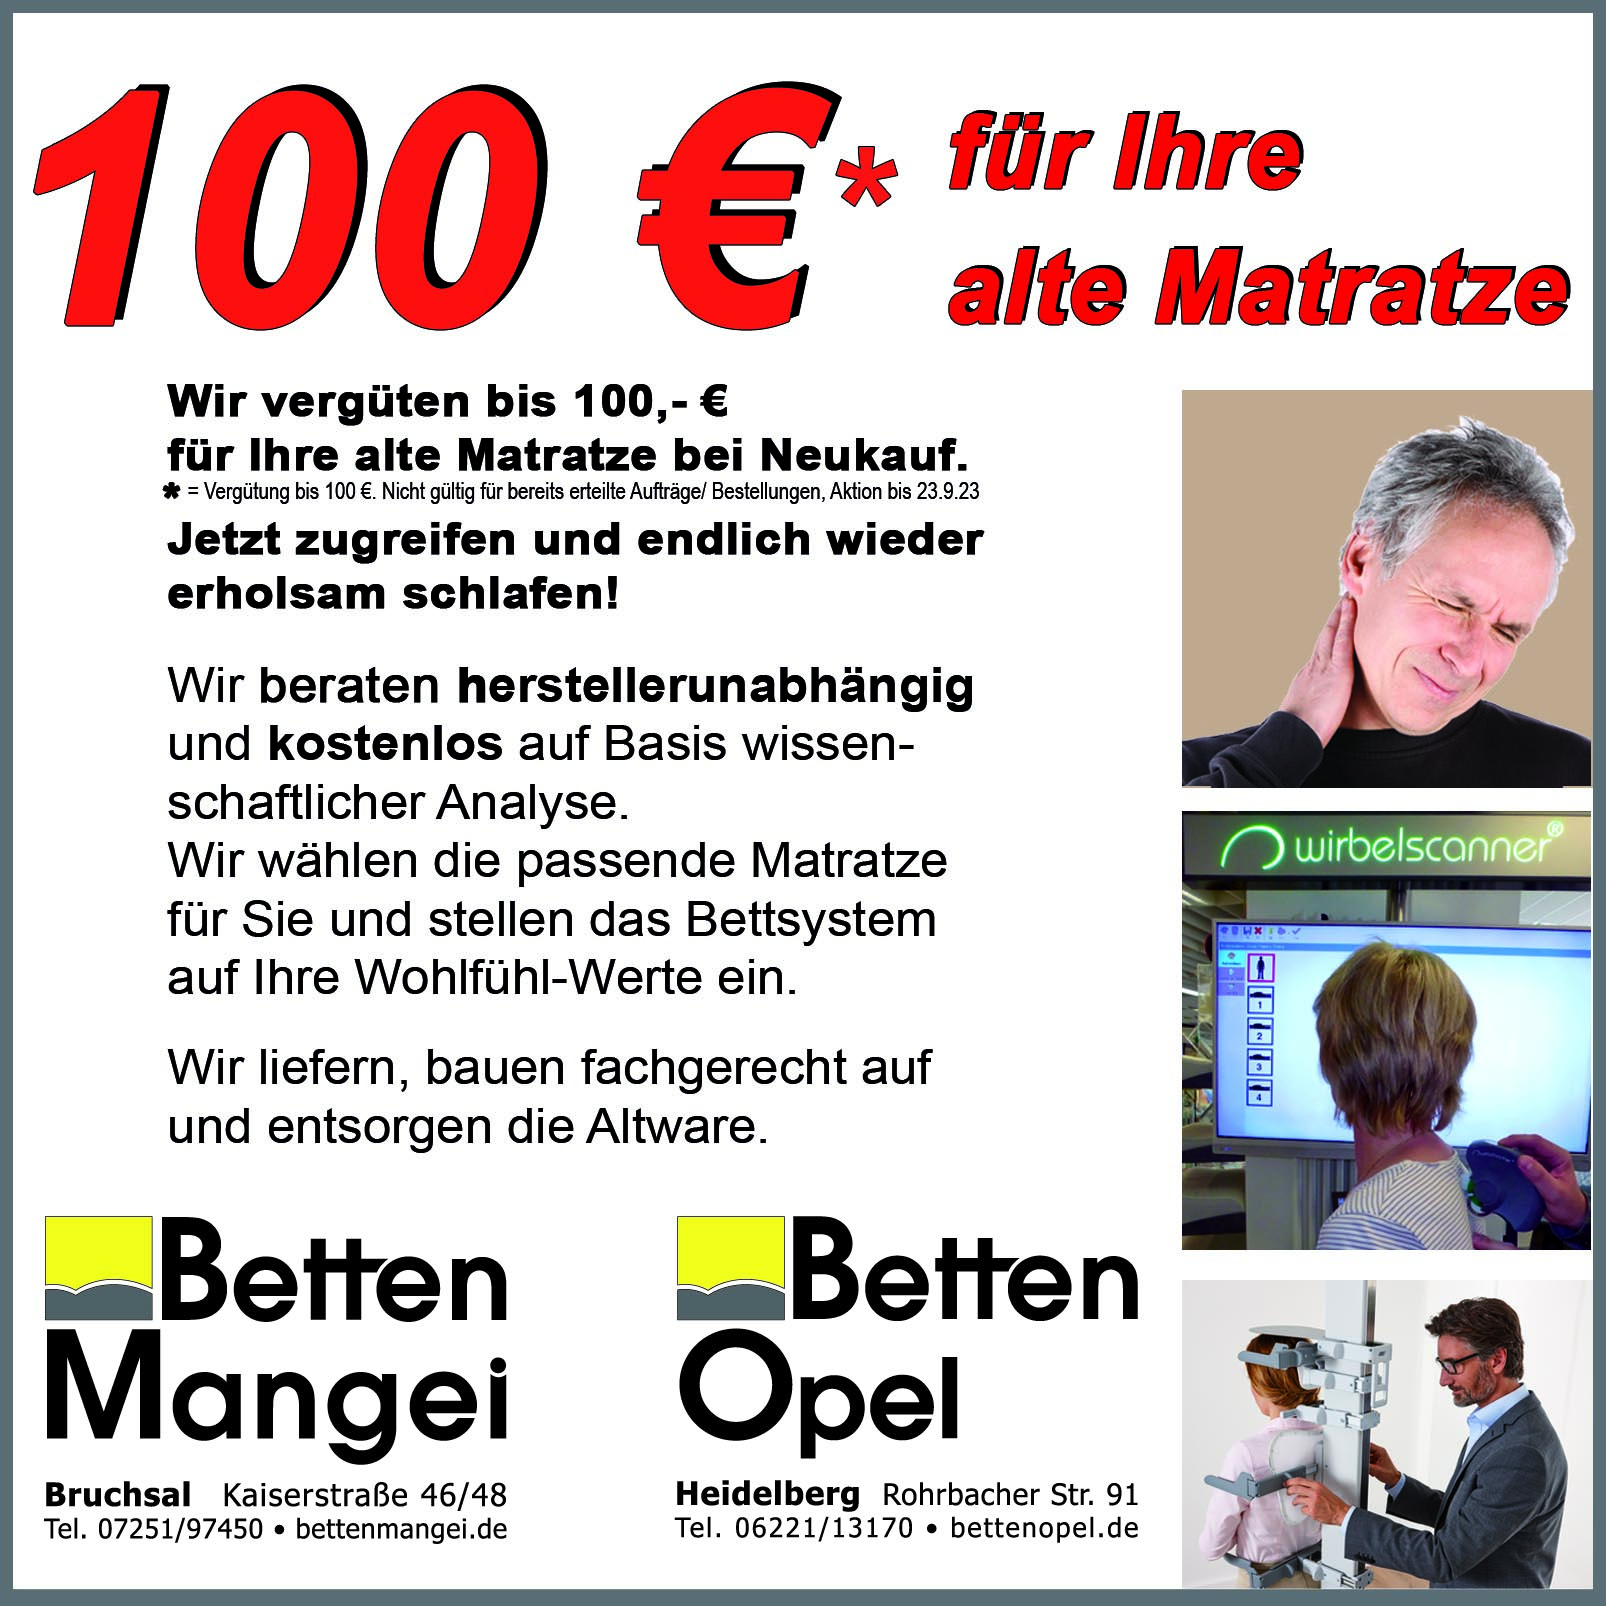 100 EUR BIS Mangei Opel 136x200 2020 Instagram